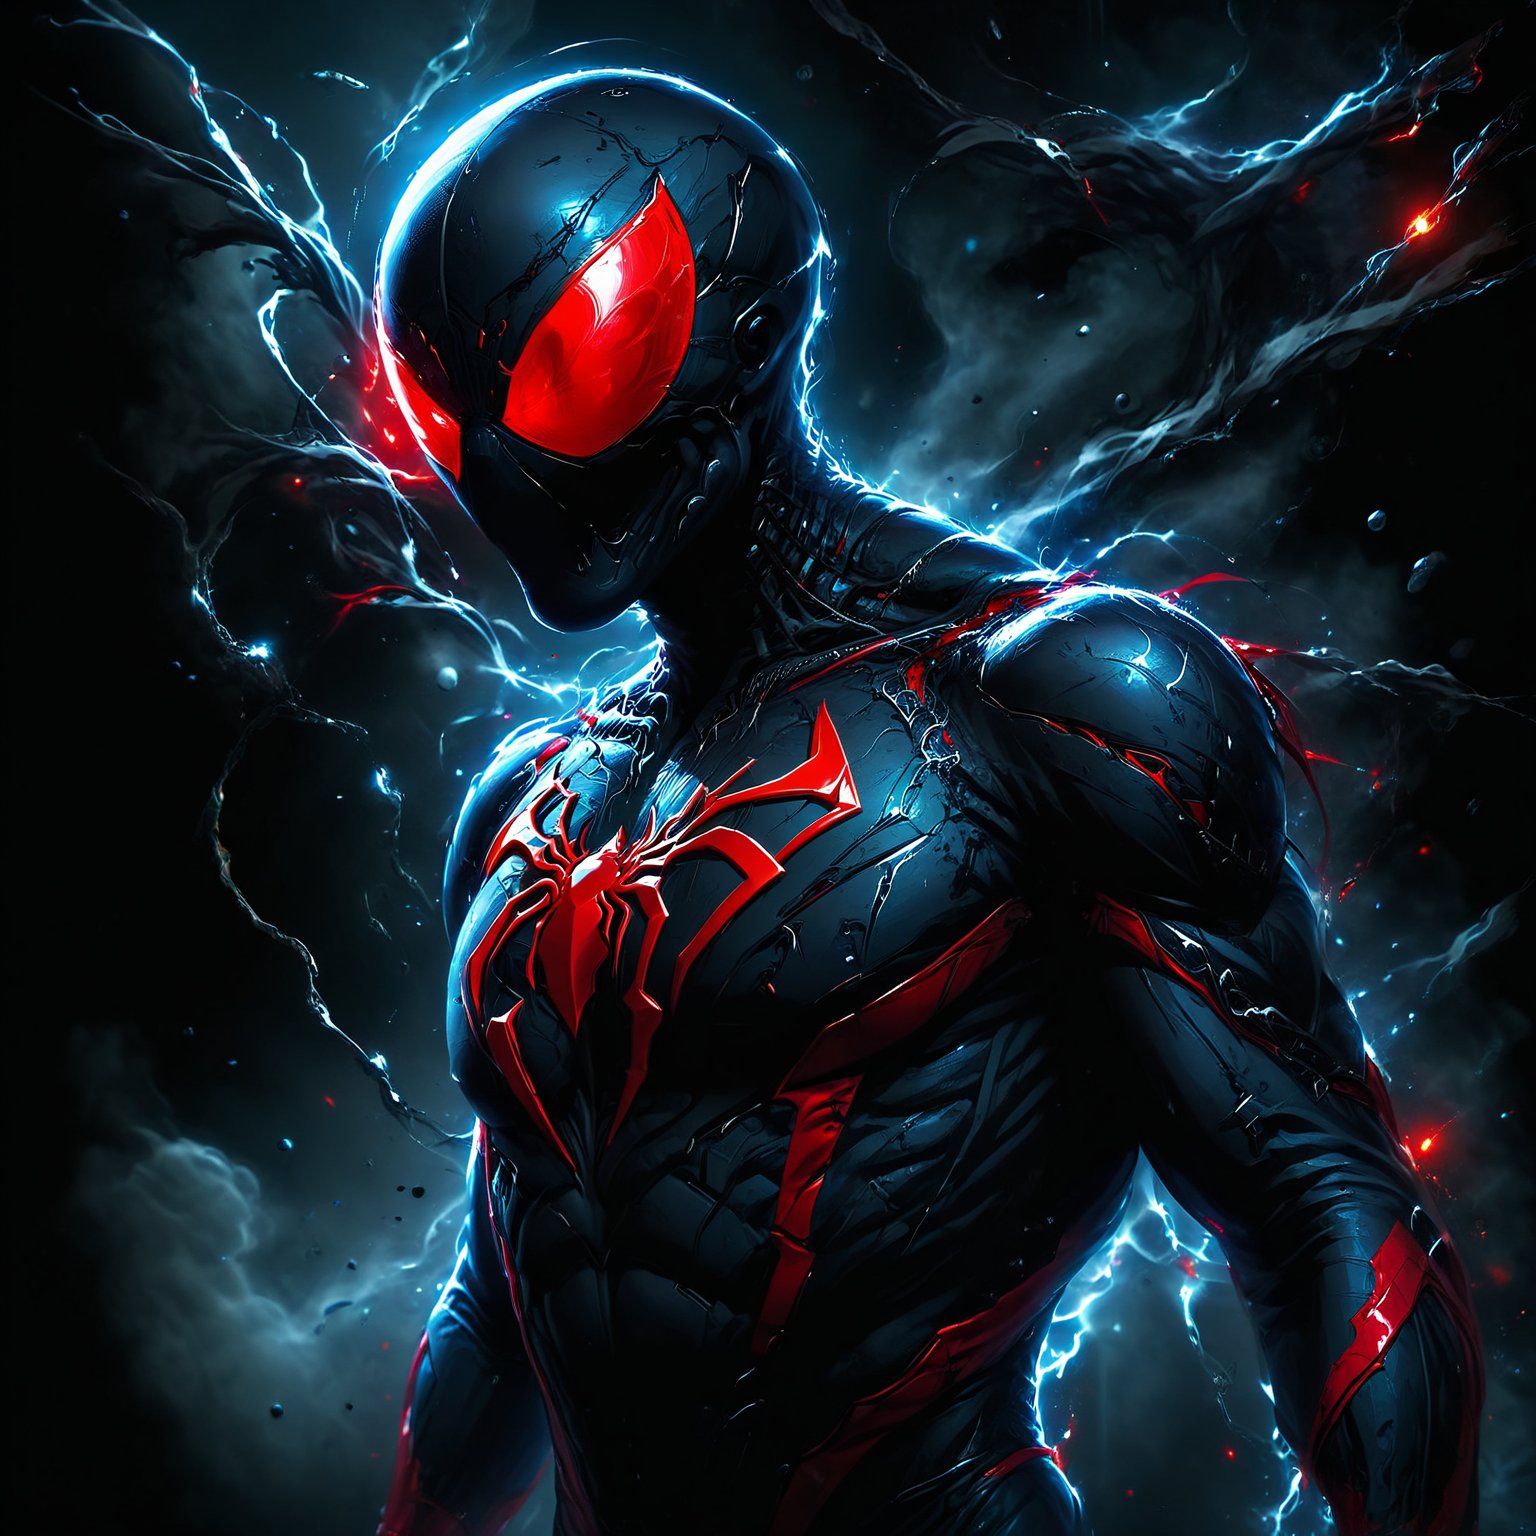 Spiderman with venom , dark fog , red eye , futuristic, hd and 8k quality 